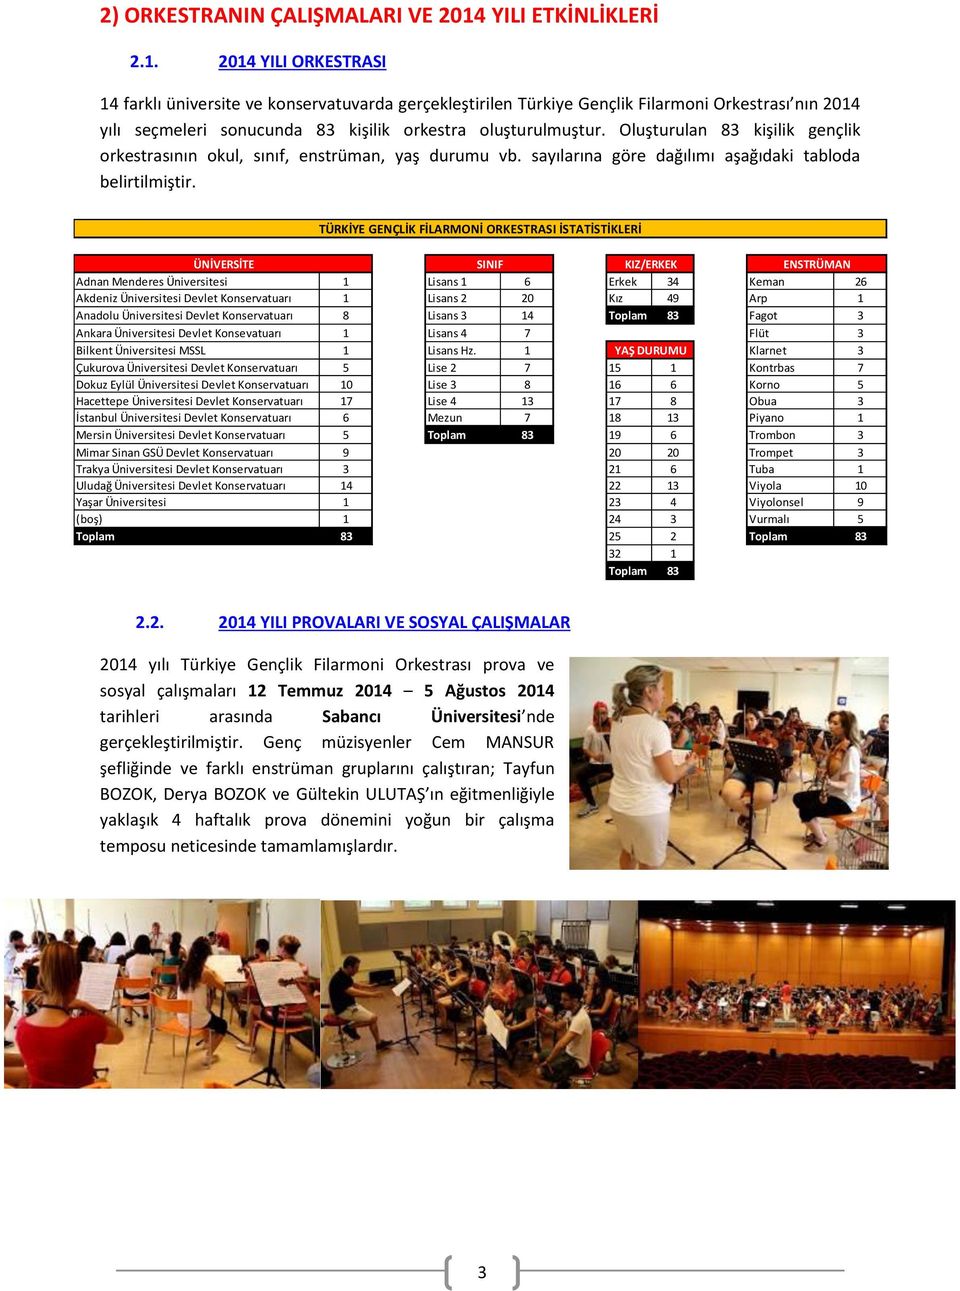 2014 YILI ORKESTRASI 14 farklı üniversite ve konservatuvarda gerçekleştirilen Türkiye Gençlik Filarmoni Orkestrası nın 2014 yılı seçmeleri sonucunda 83 kişilik orkestra oluşturulmuştur.